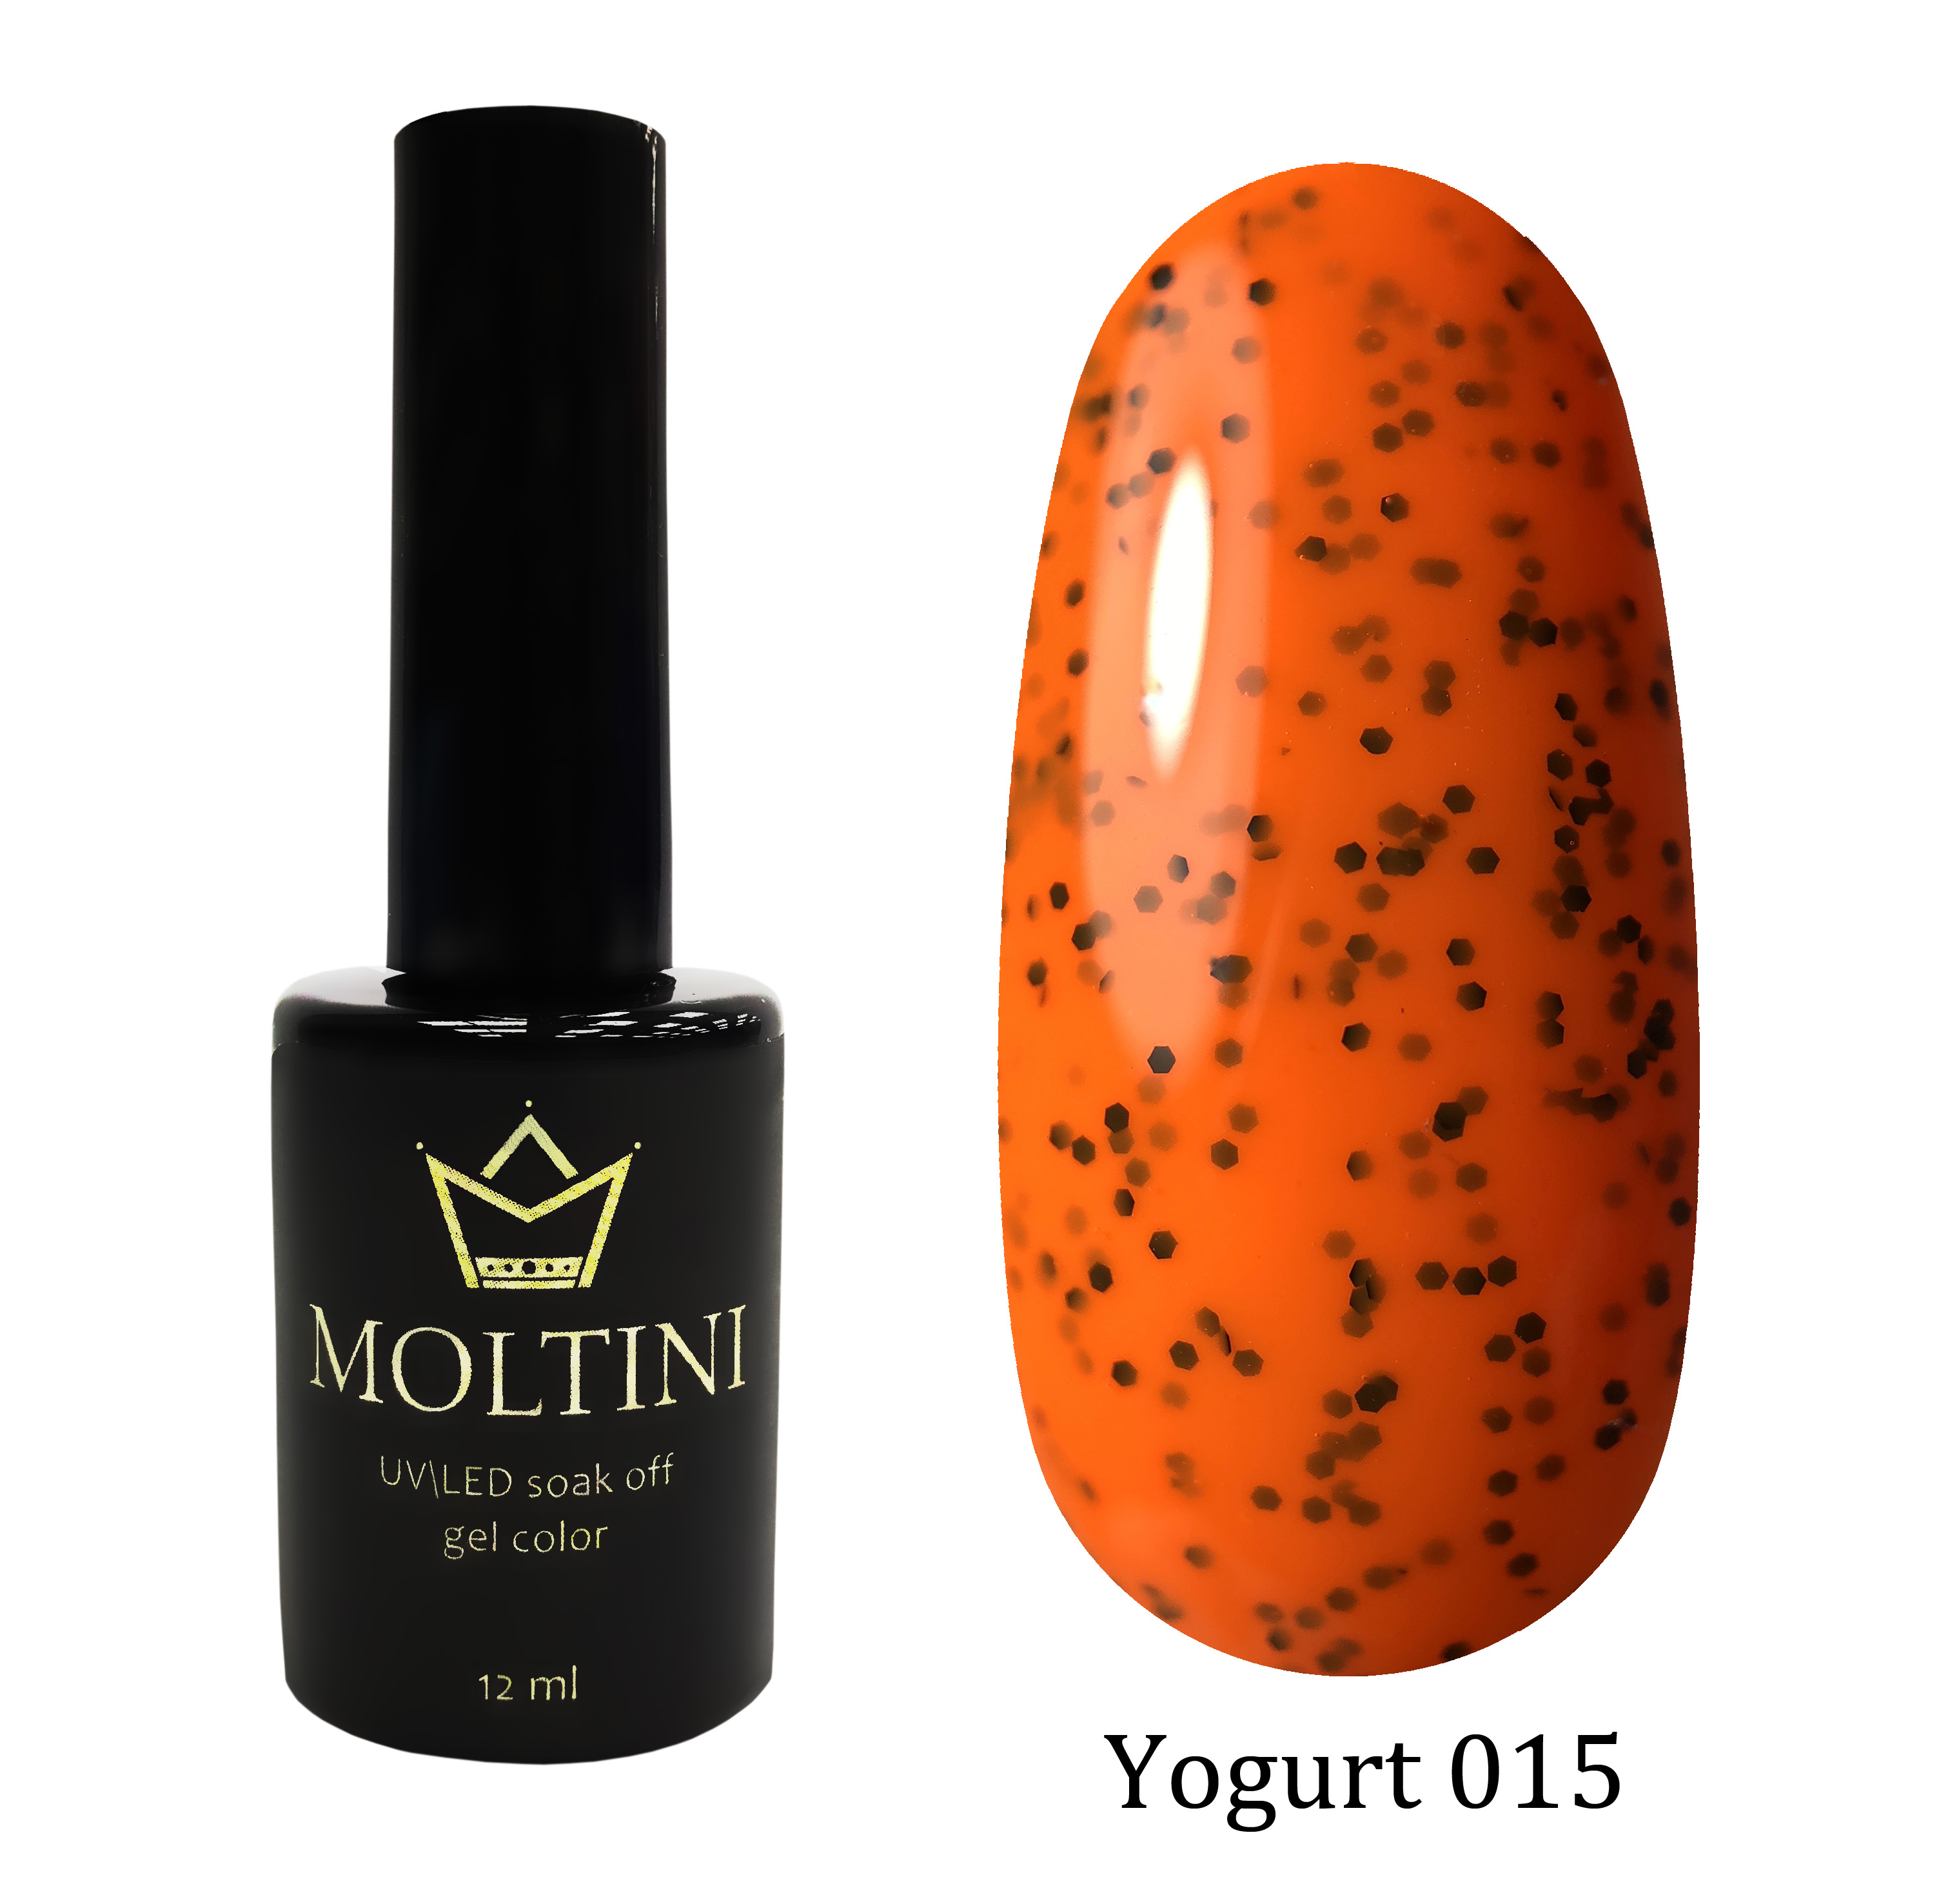 Moltini цветной гель-лак Yogurt 015, 12 мл